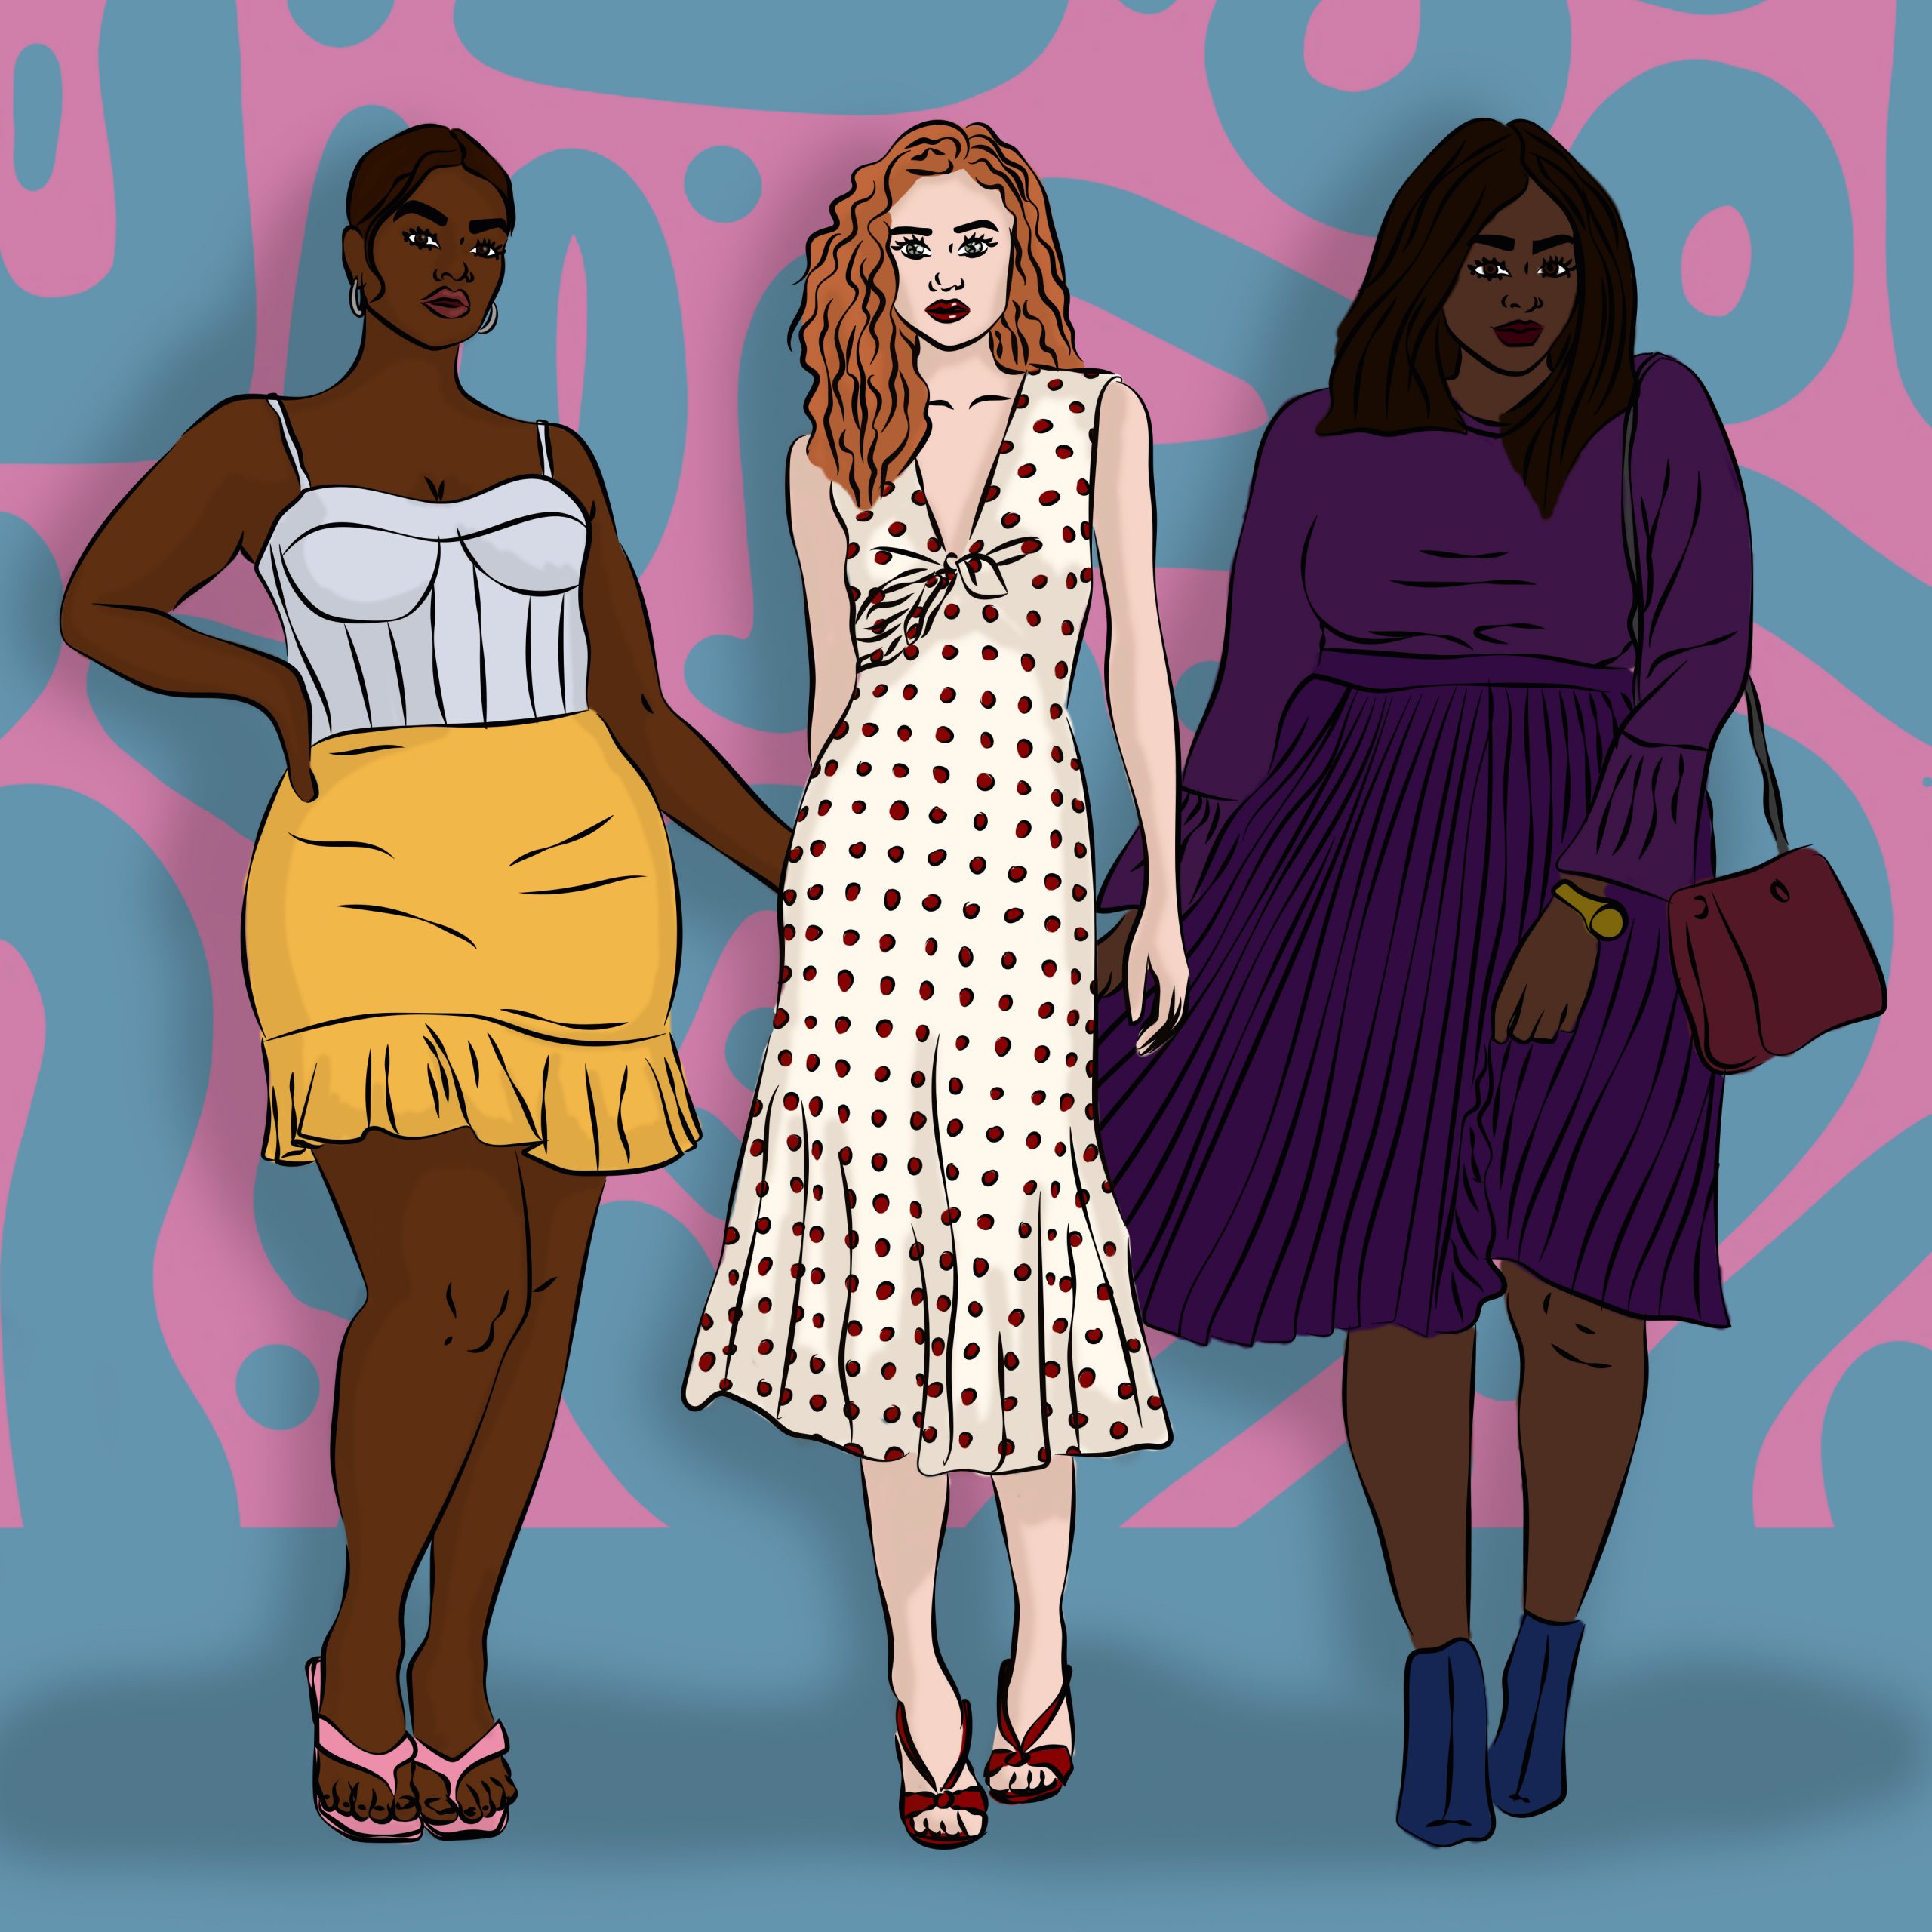 afbeelding met drie vrouwen, links een vrouw in gele minirok, in het midden een vrouw met een polkadotjurk en rechts een vrouw in een volledig paarse outfit